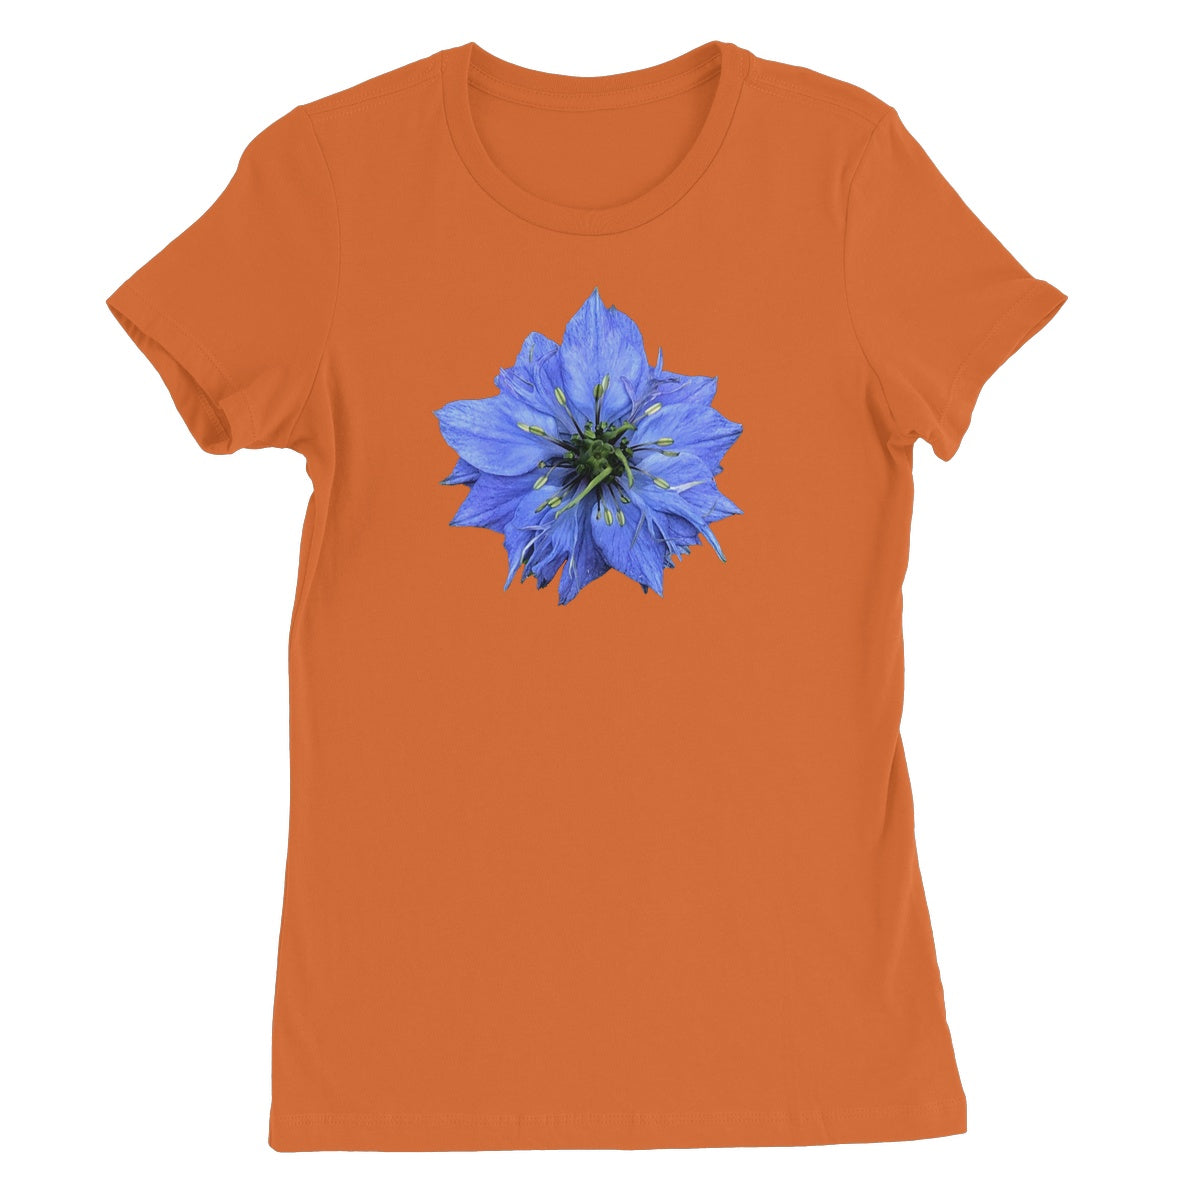 Blue Flower Women's T-Shirt